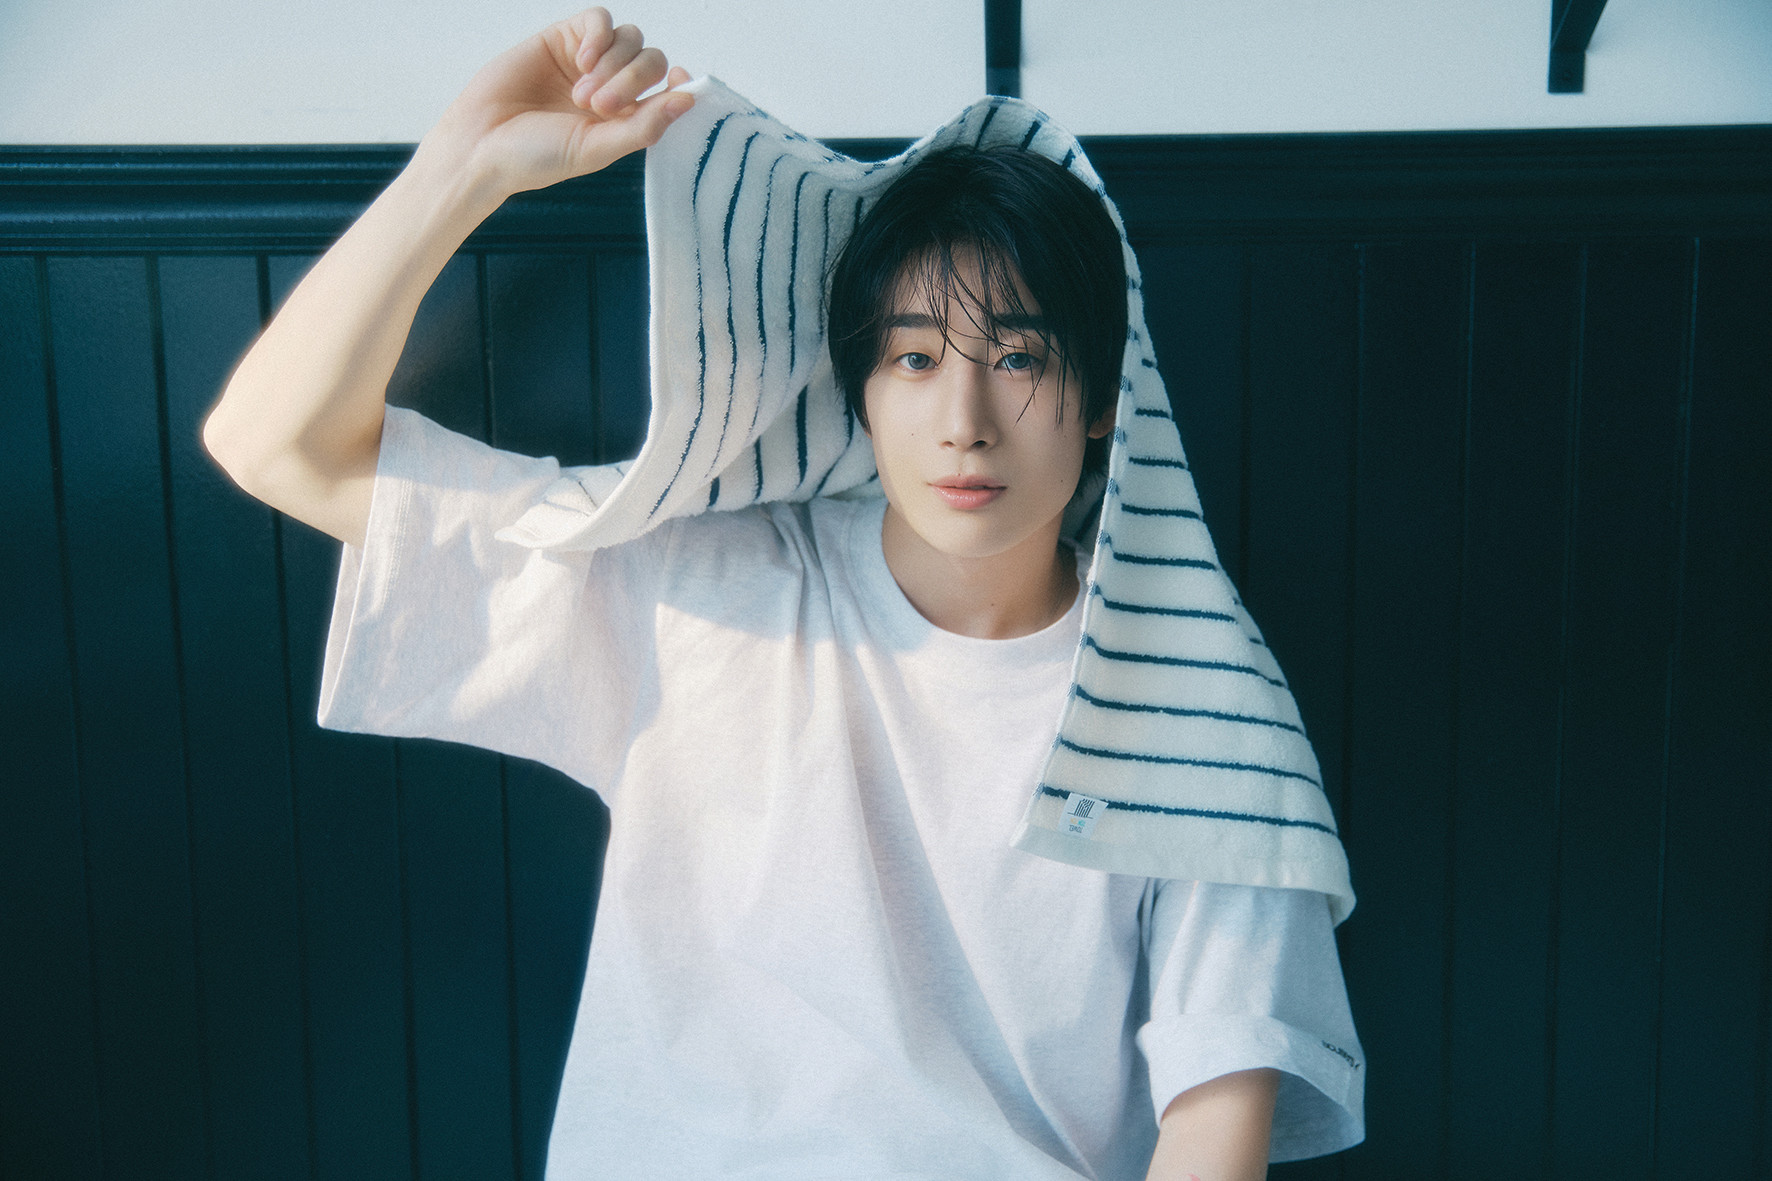 한승우 Han Seung Woo 1st Single Album [SCENE] Concept Photo #1